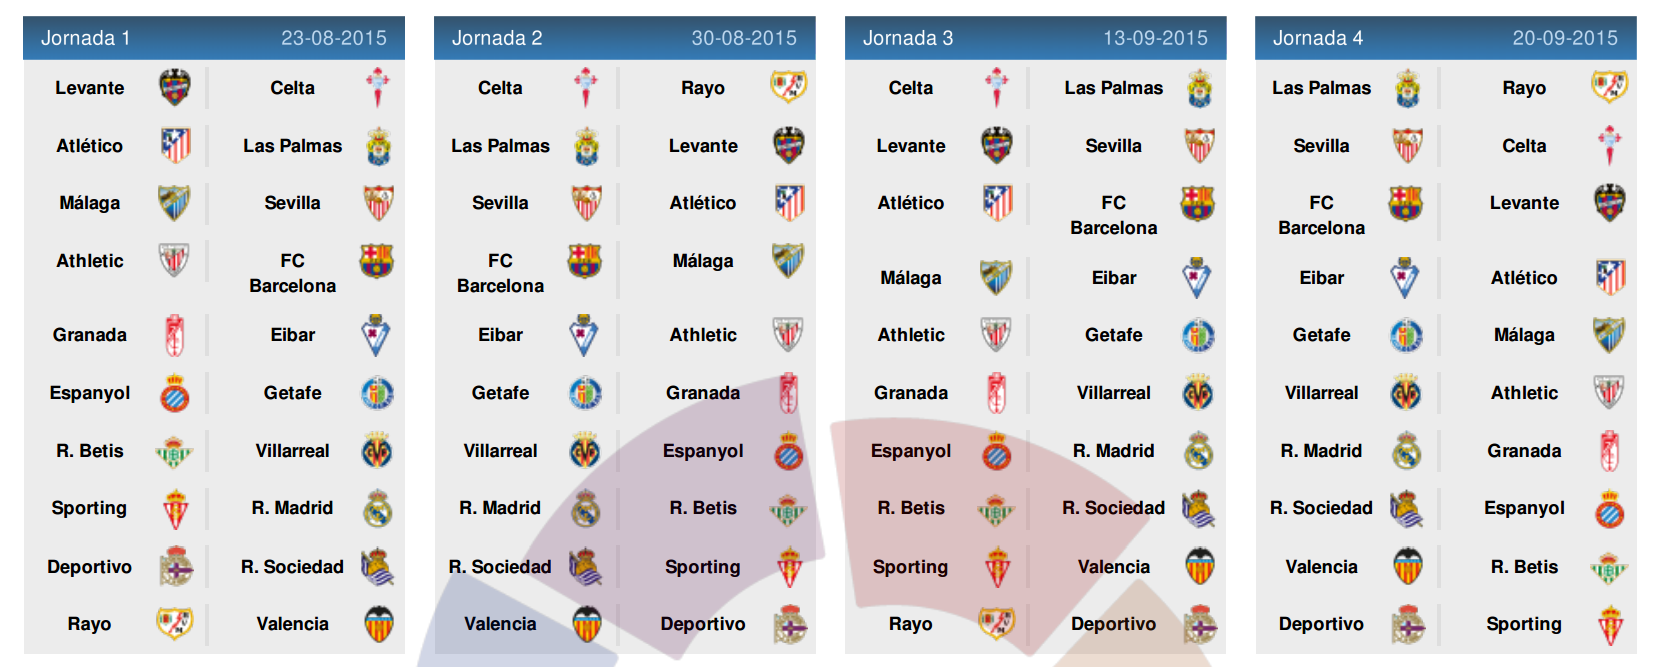 Jadwal Pertandingan Sepakbola Liga Spanyol 2014 2015 ...